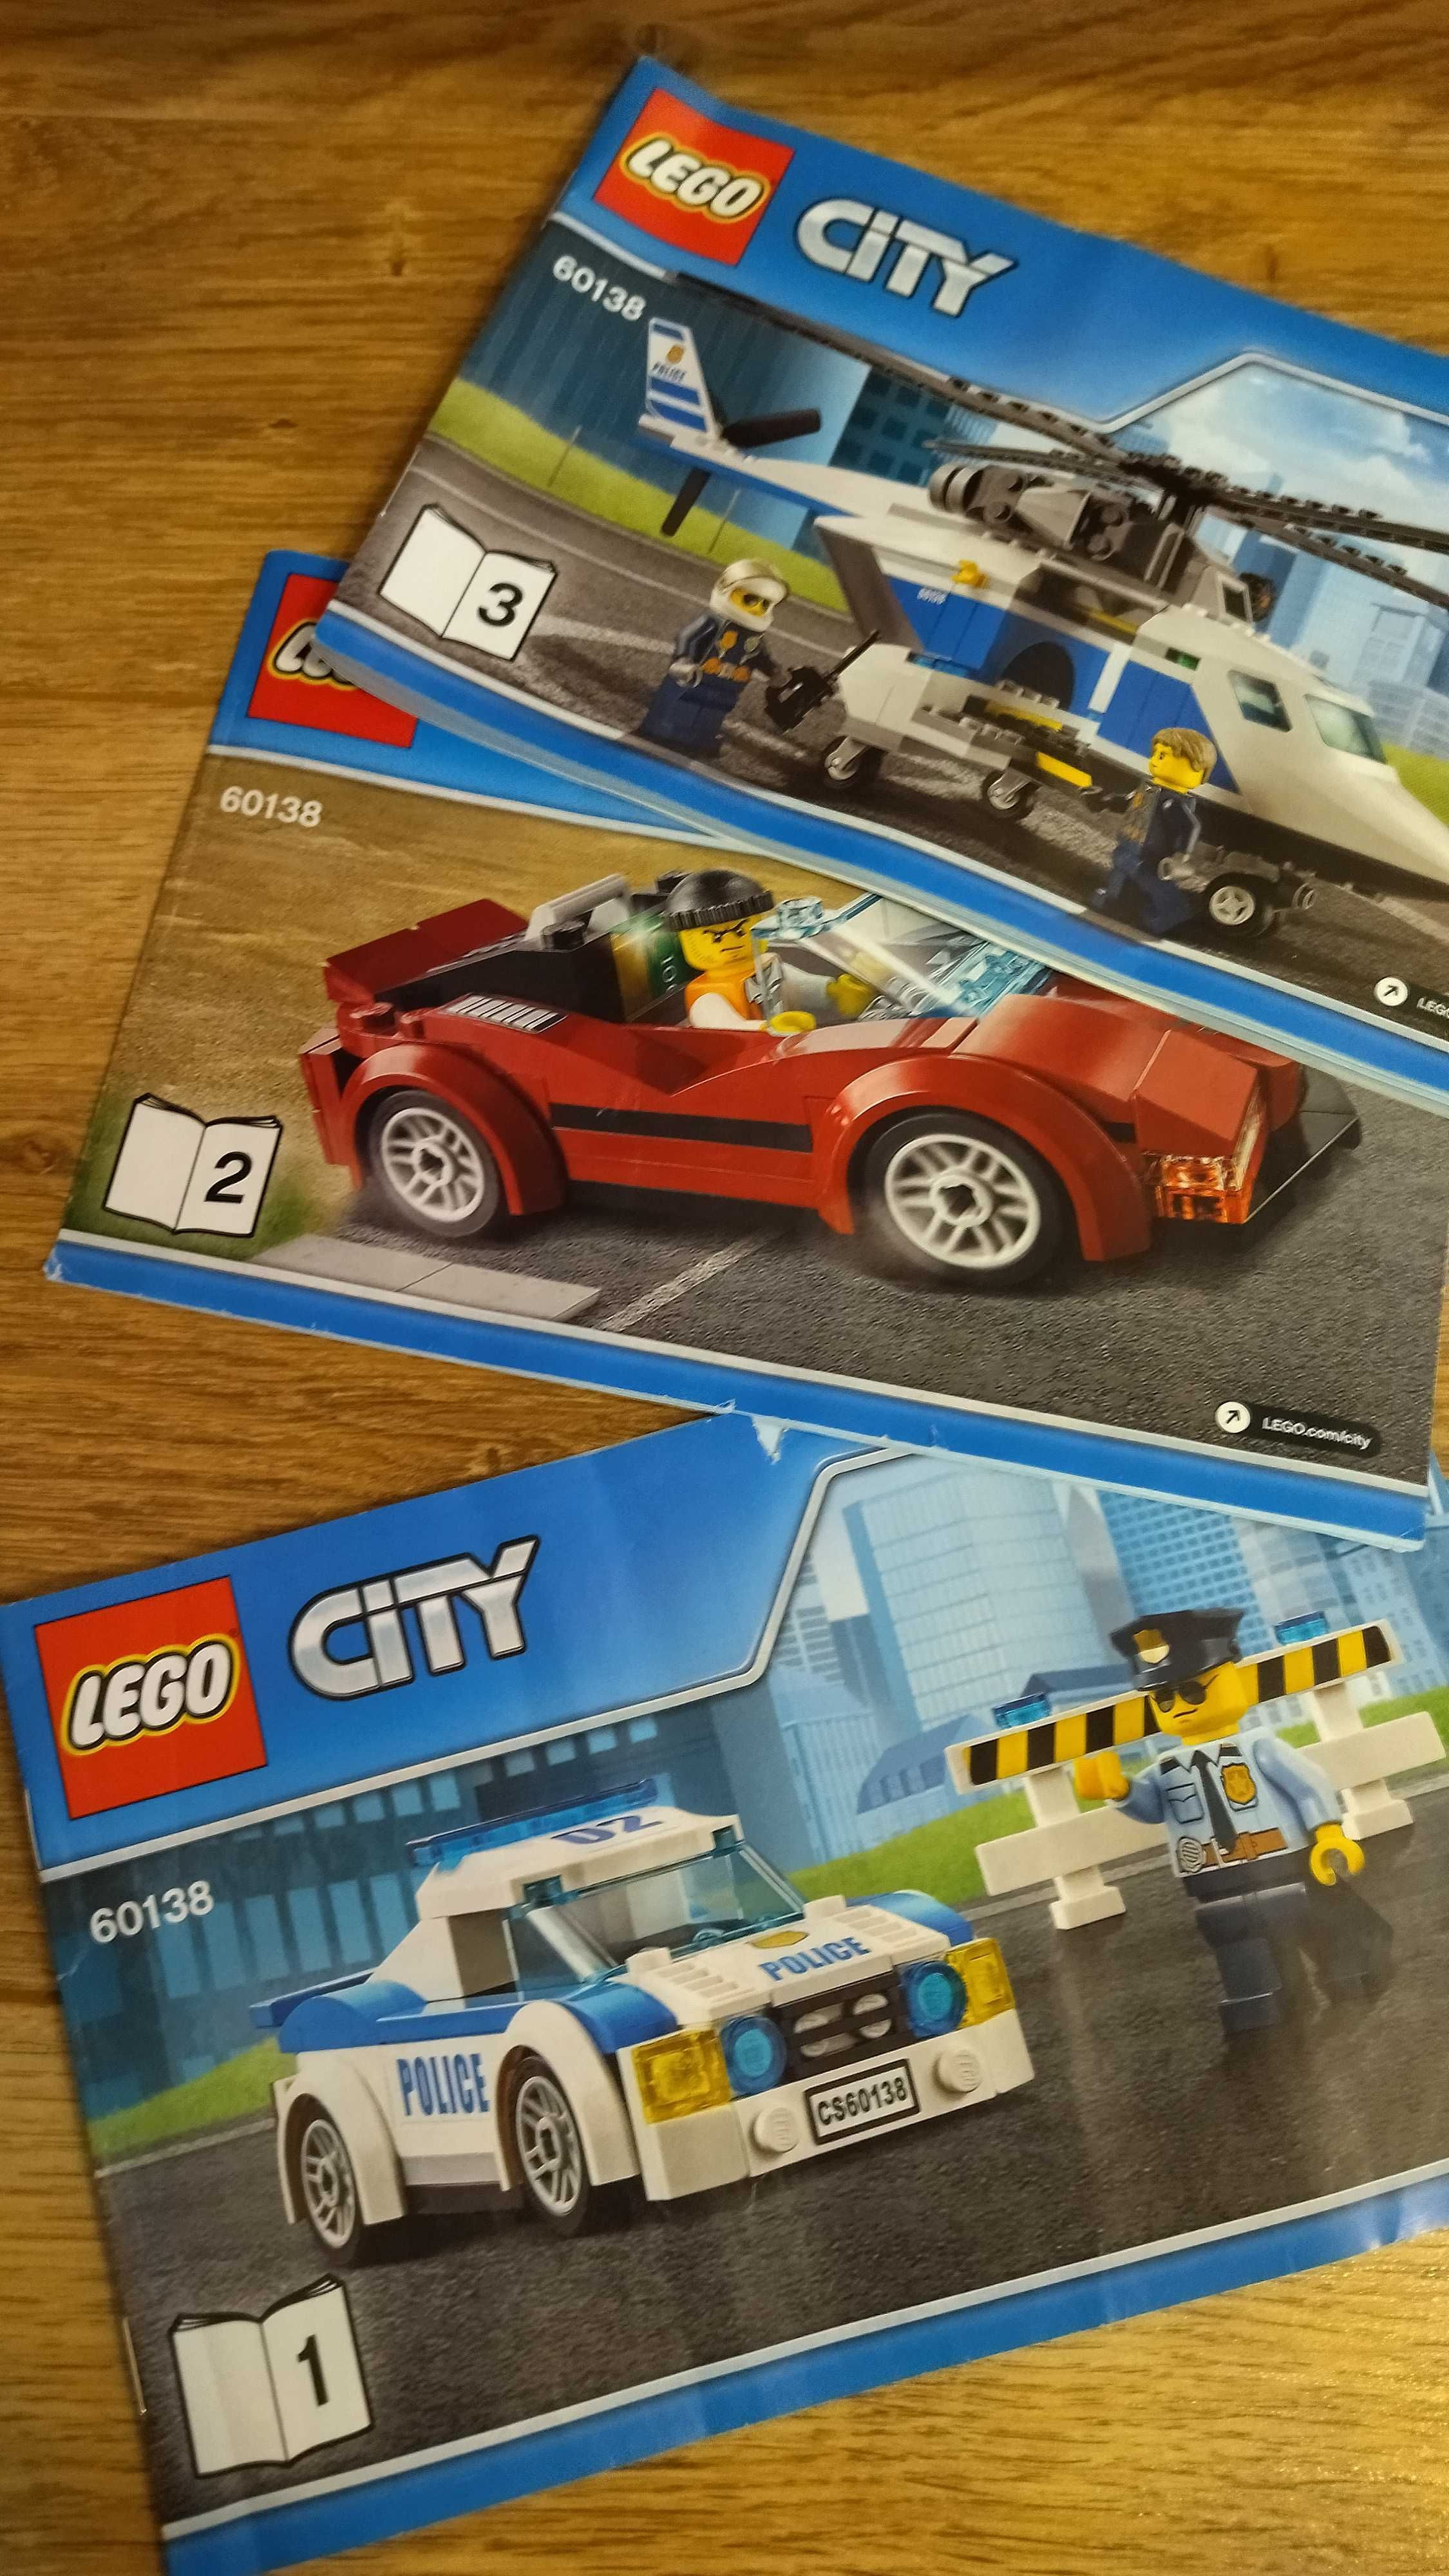 Lego szybki pościg, policja 60138